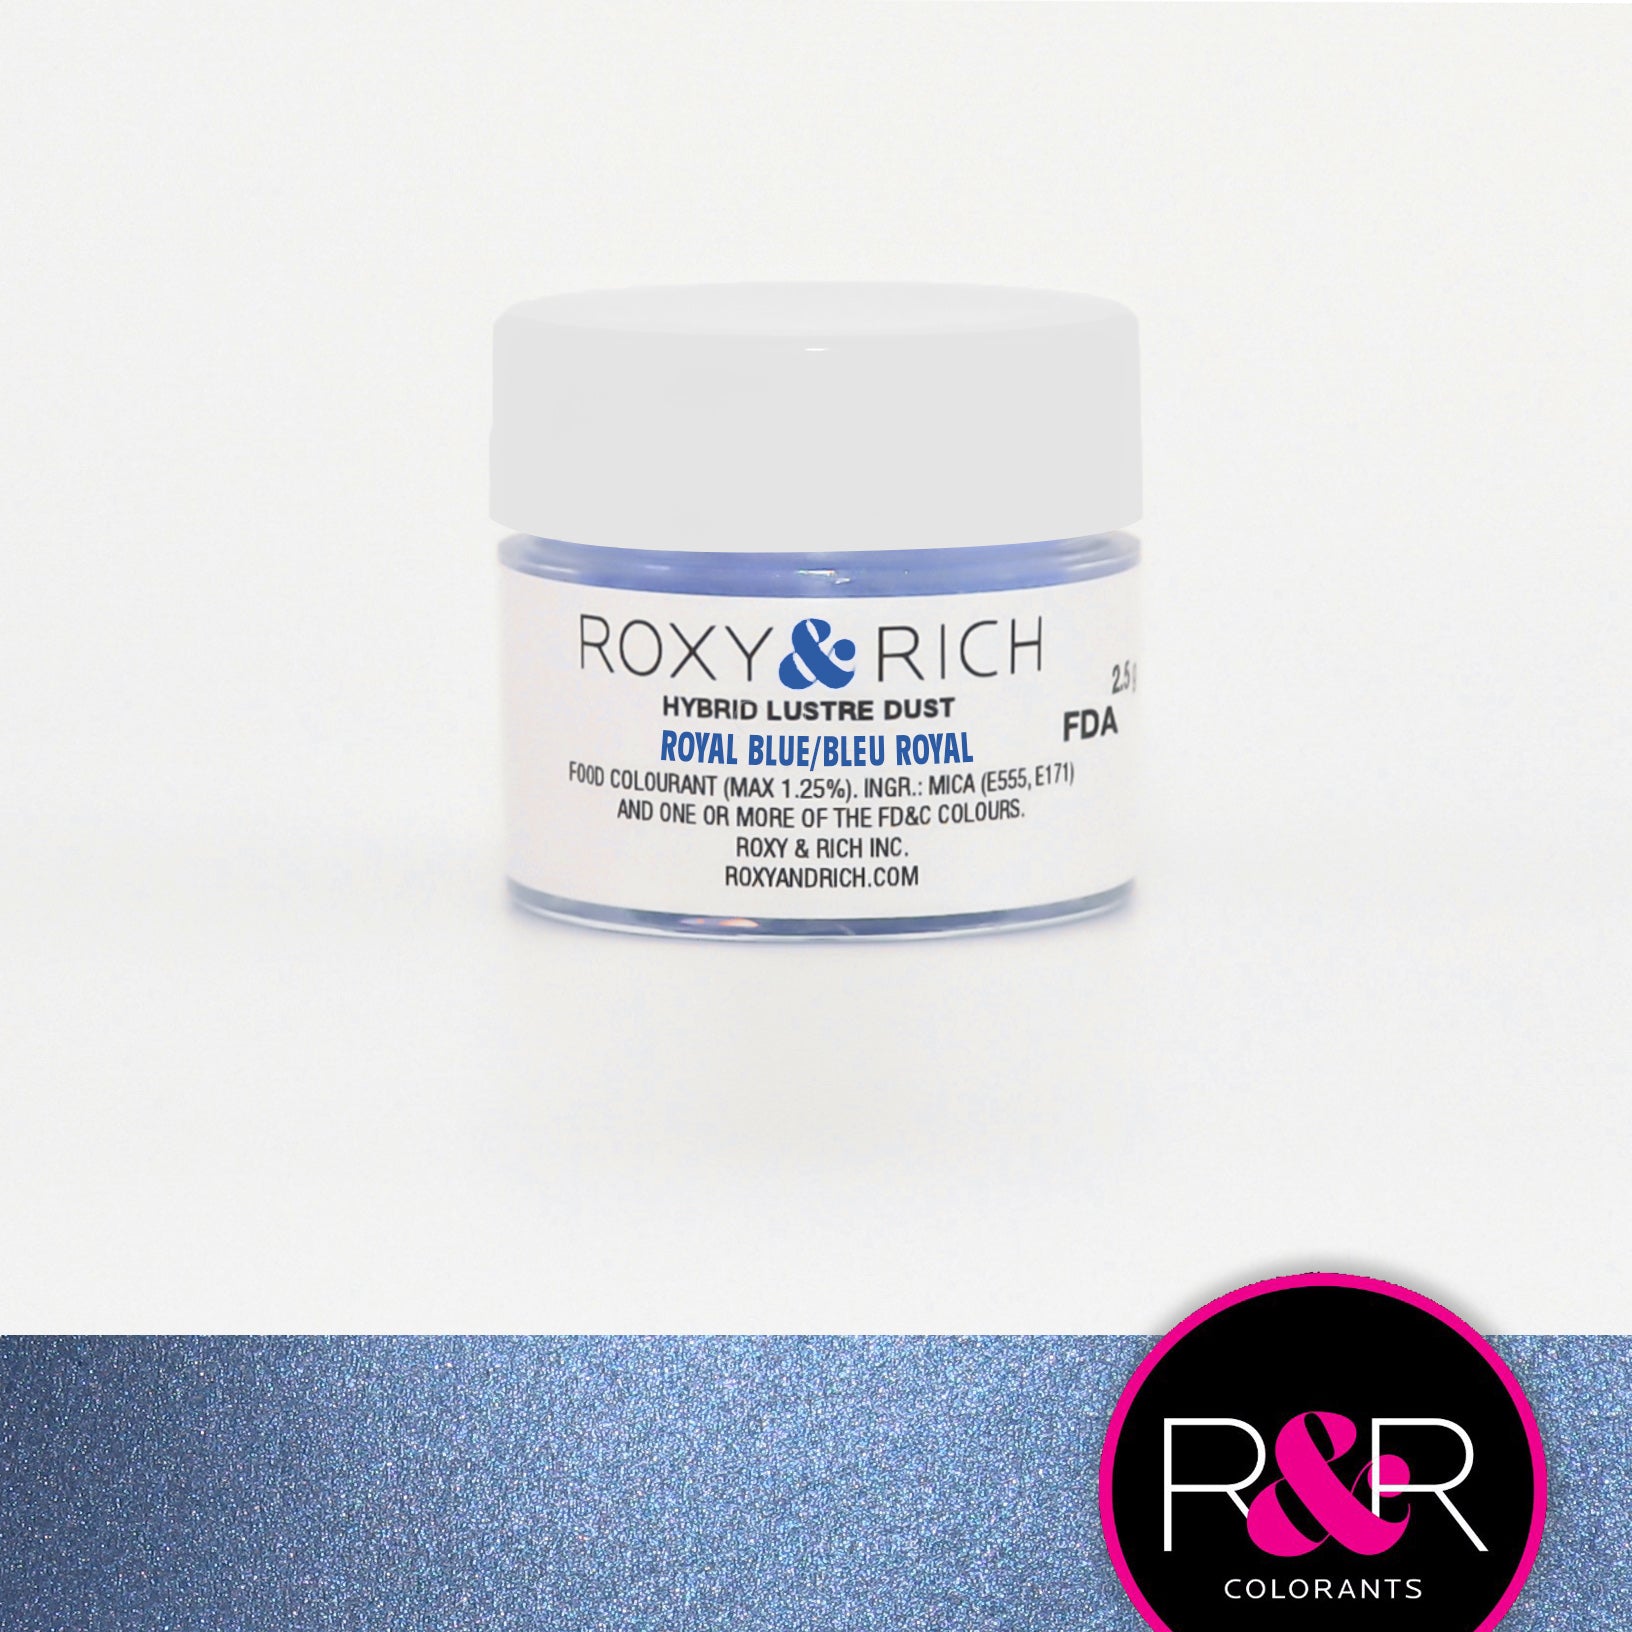 Poudre lustrée hybride Bleu Royal    - Roxy & Rich - Poudre lustrée - 